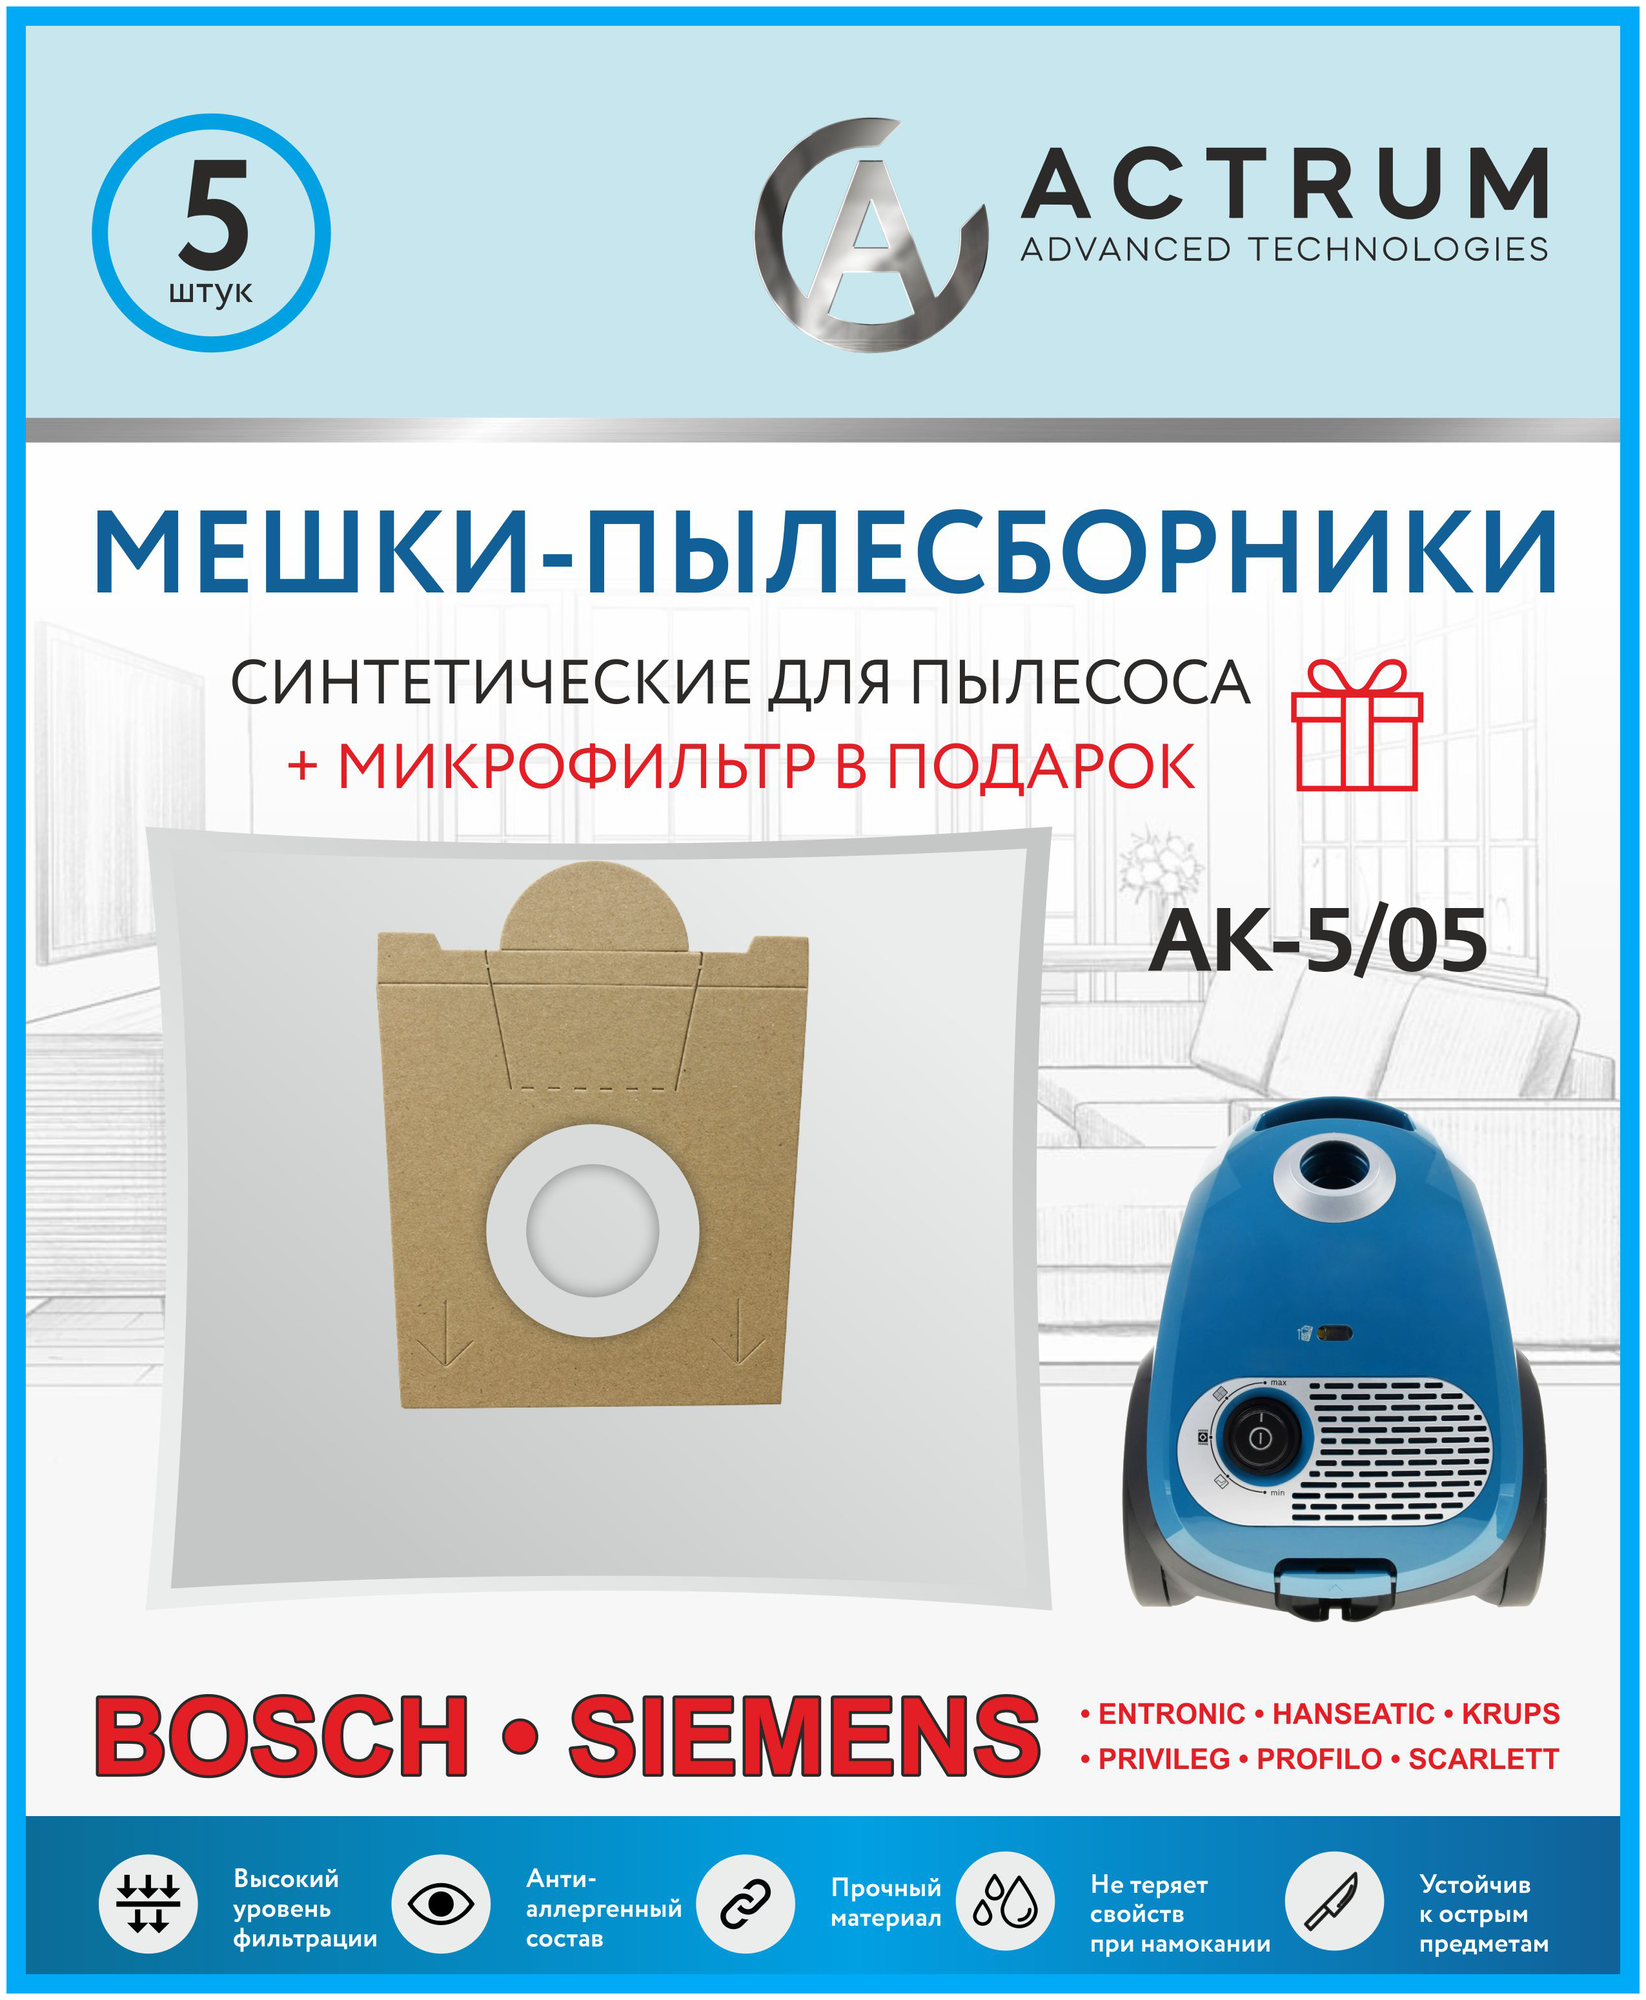 Мешки-пылесборники ACTRUM AK-5/05 для пылесосов BOSCH, SIEMENS, SCARLETT, UFESA, KRUPS, 5 шт. + микрофильтр